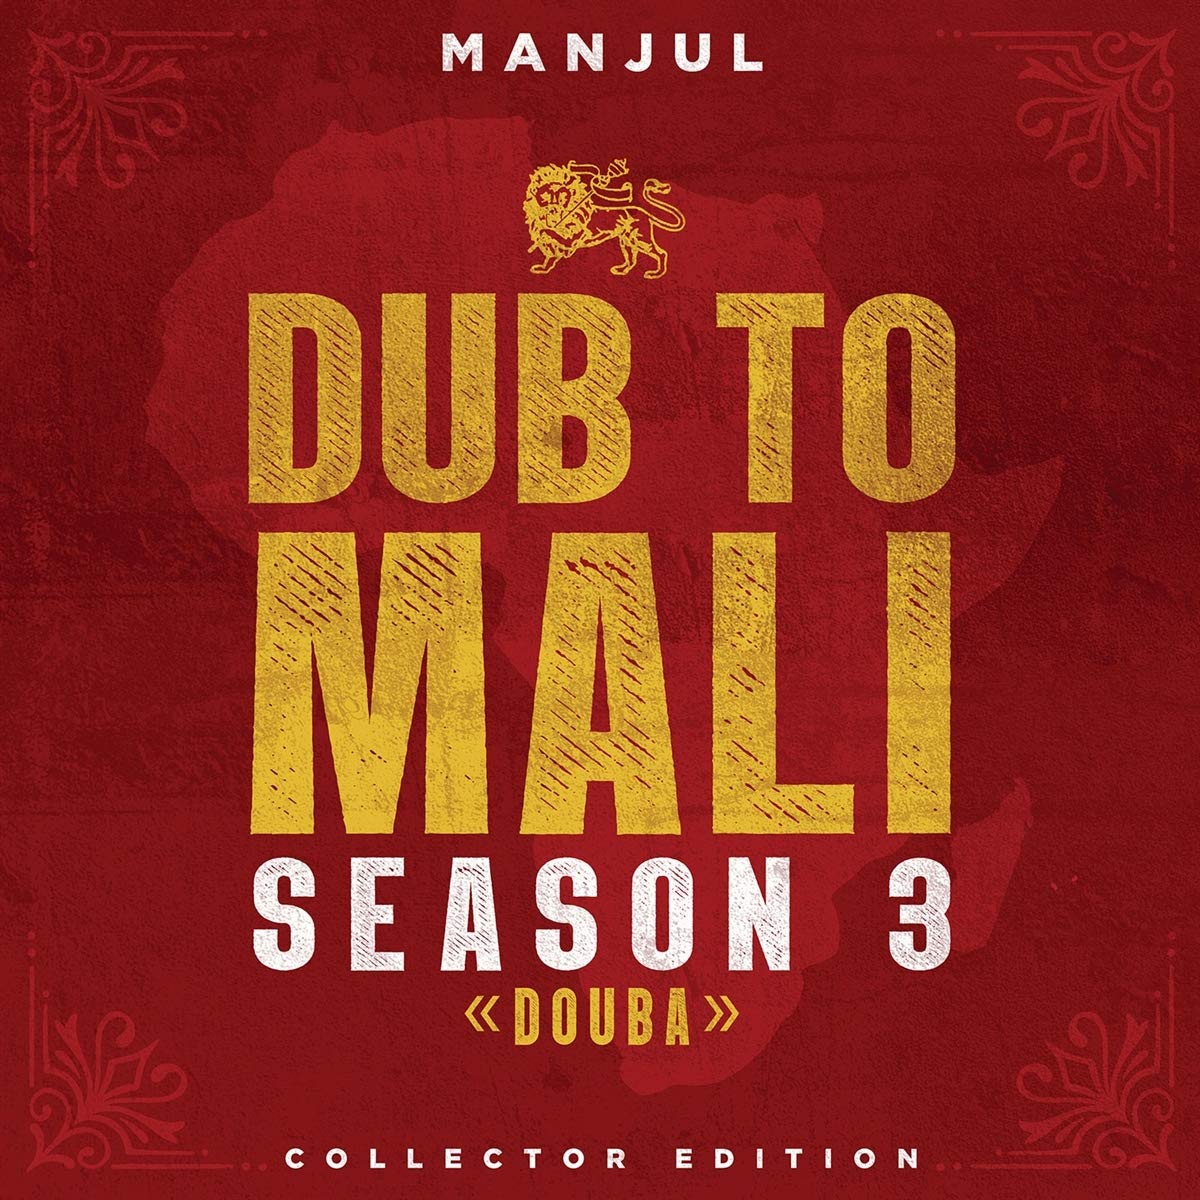 Dub to Mali, Season 3